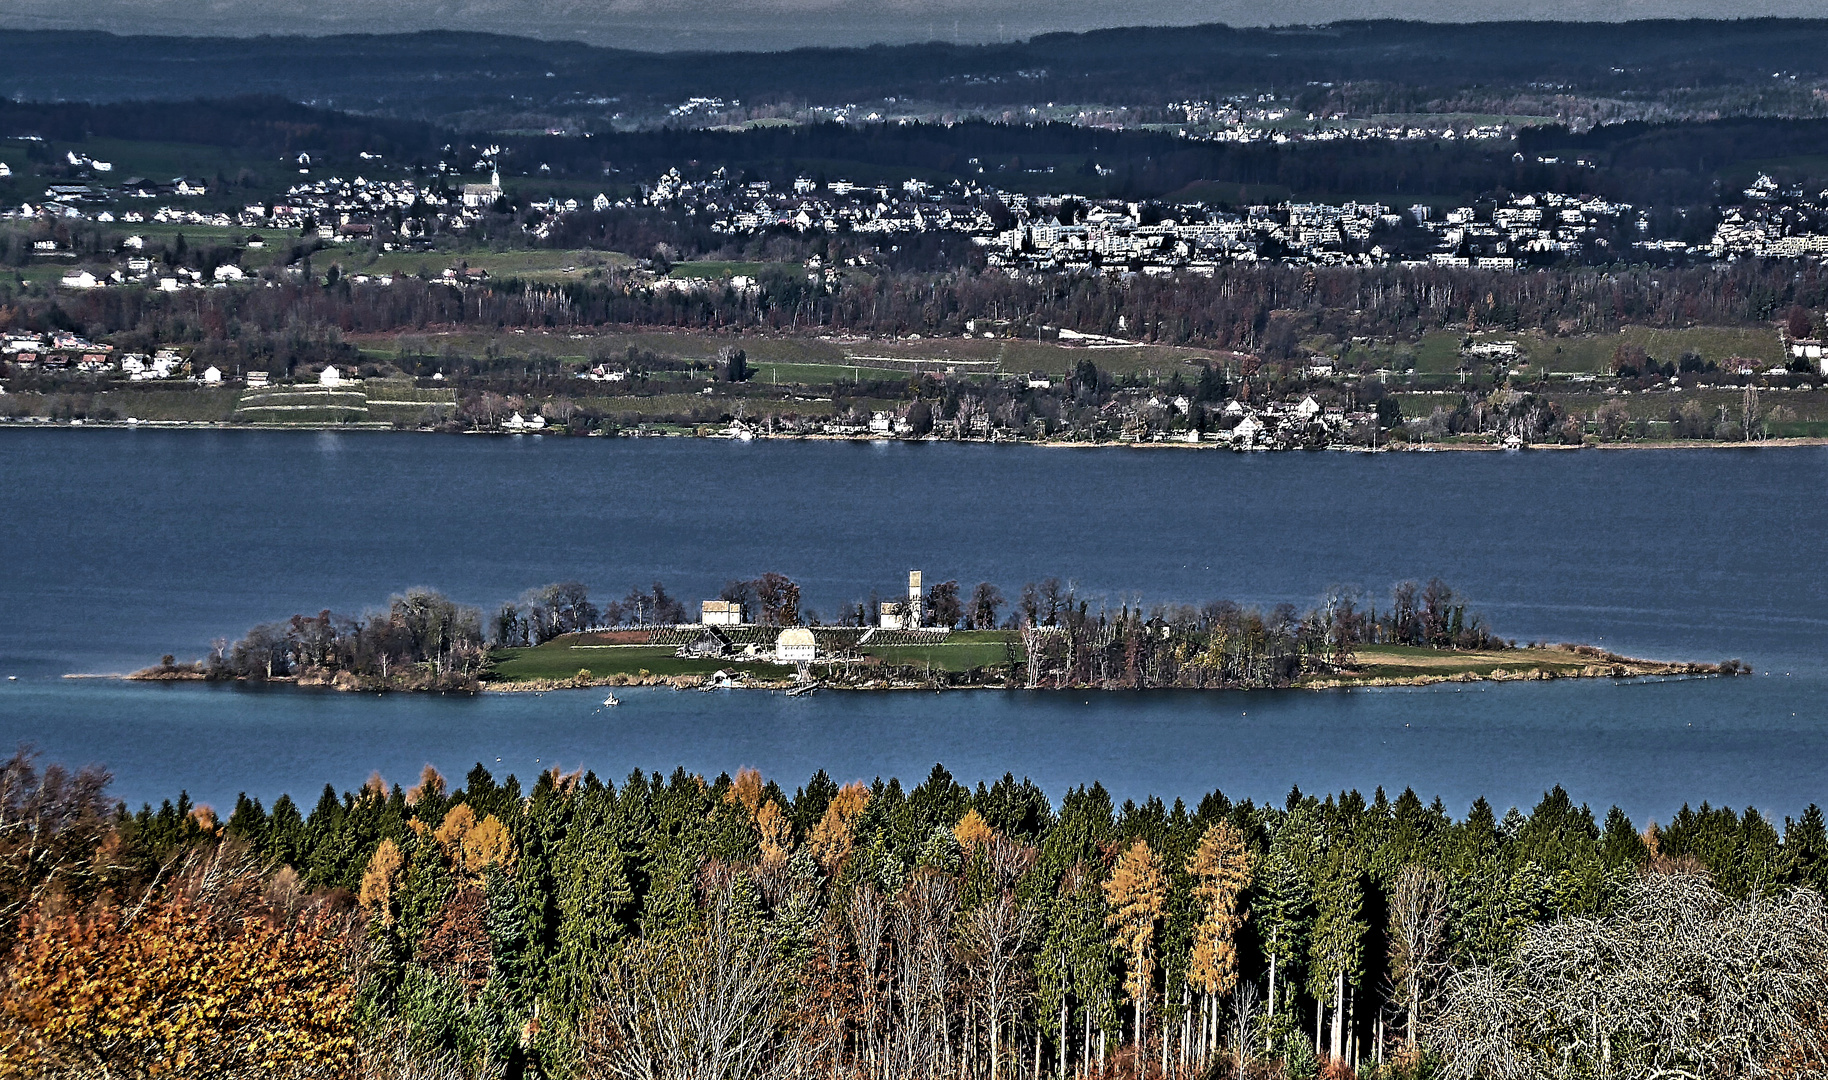 Insel Ufnau im Zürichsee